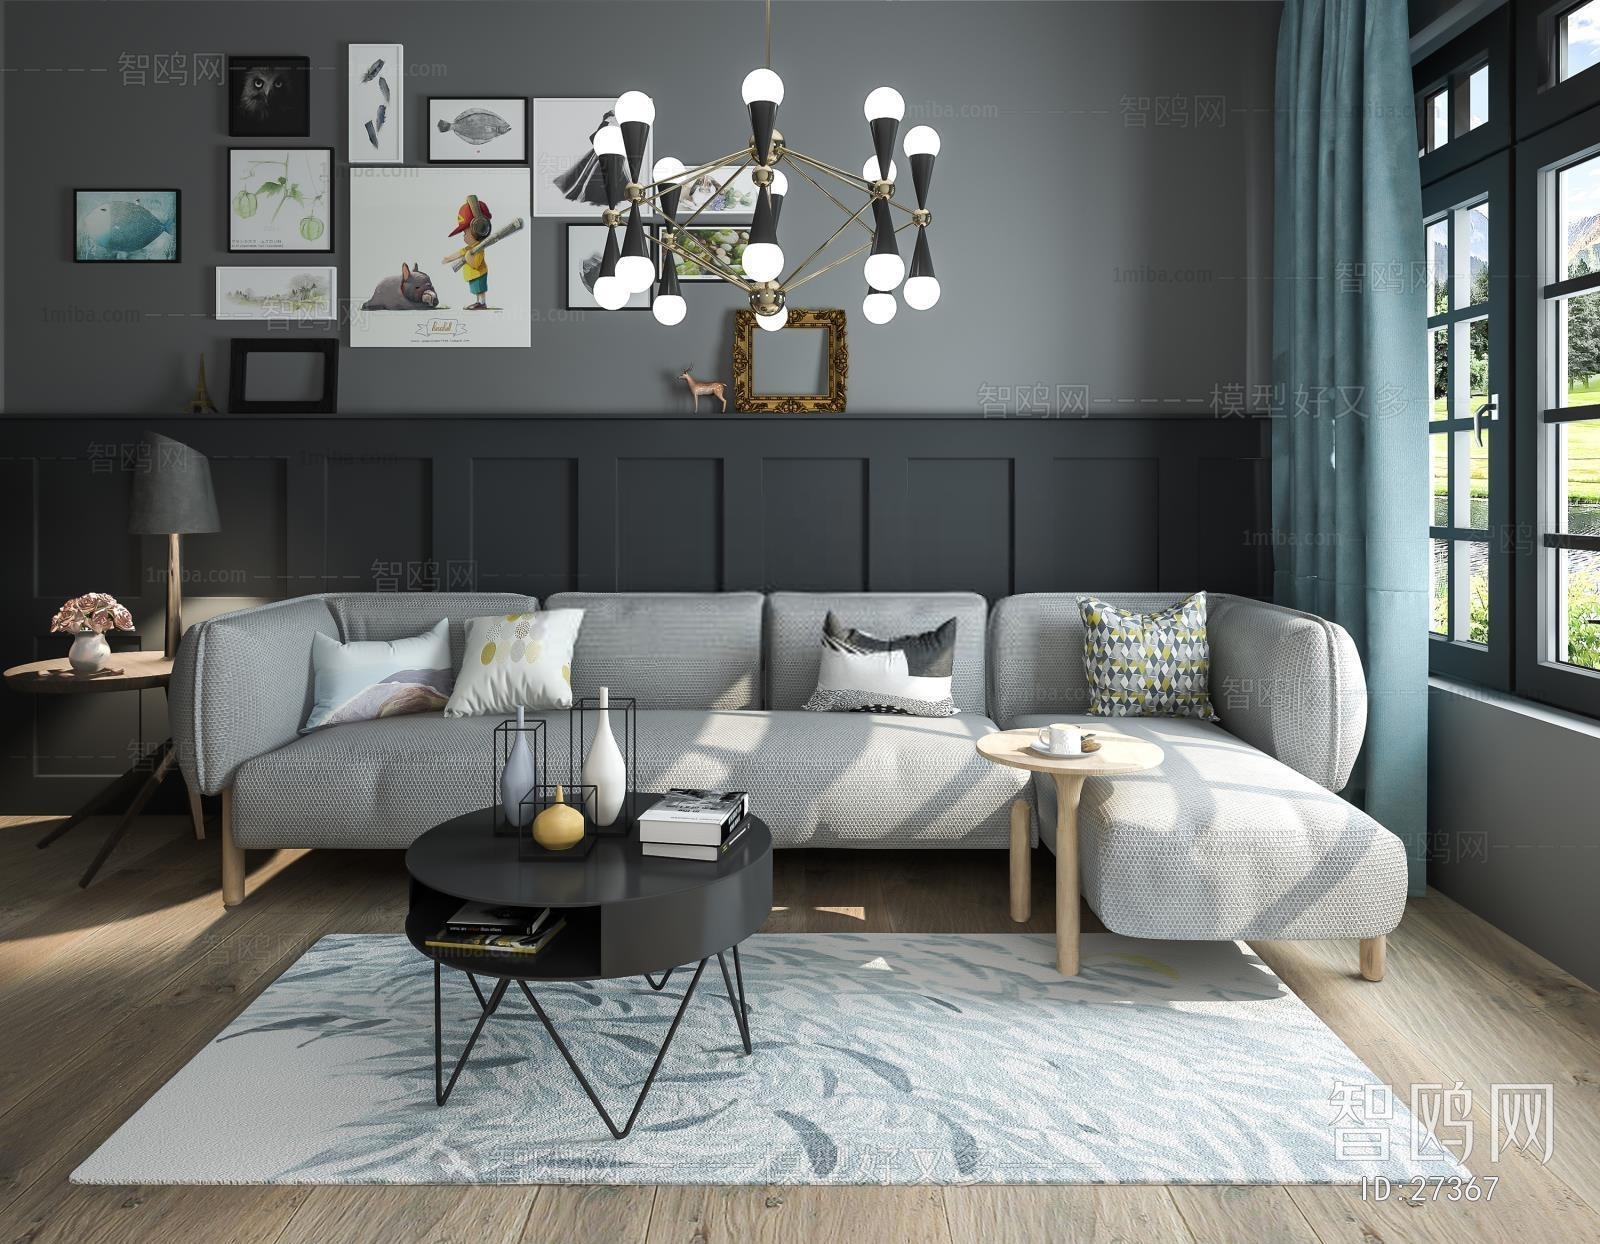 Modern Nordic Style Multi Person Sofa